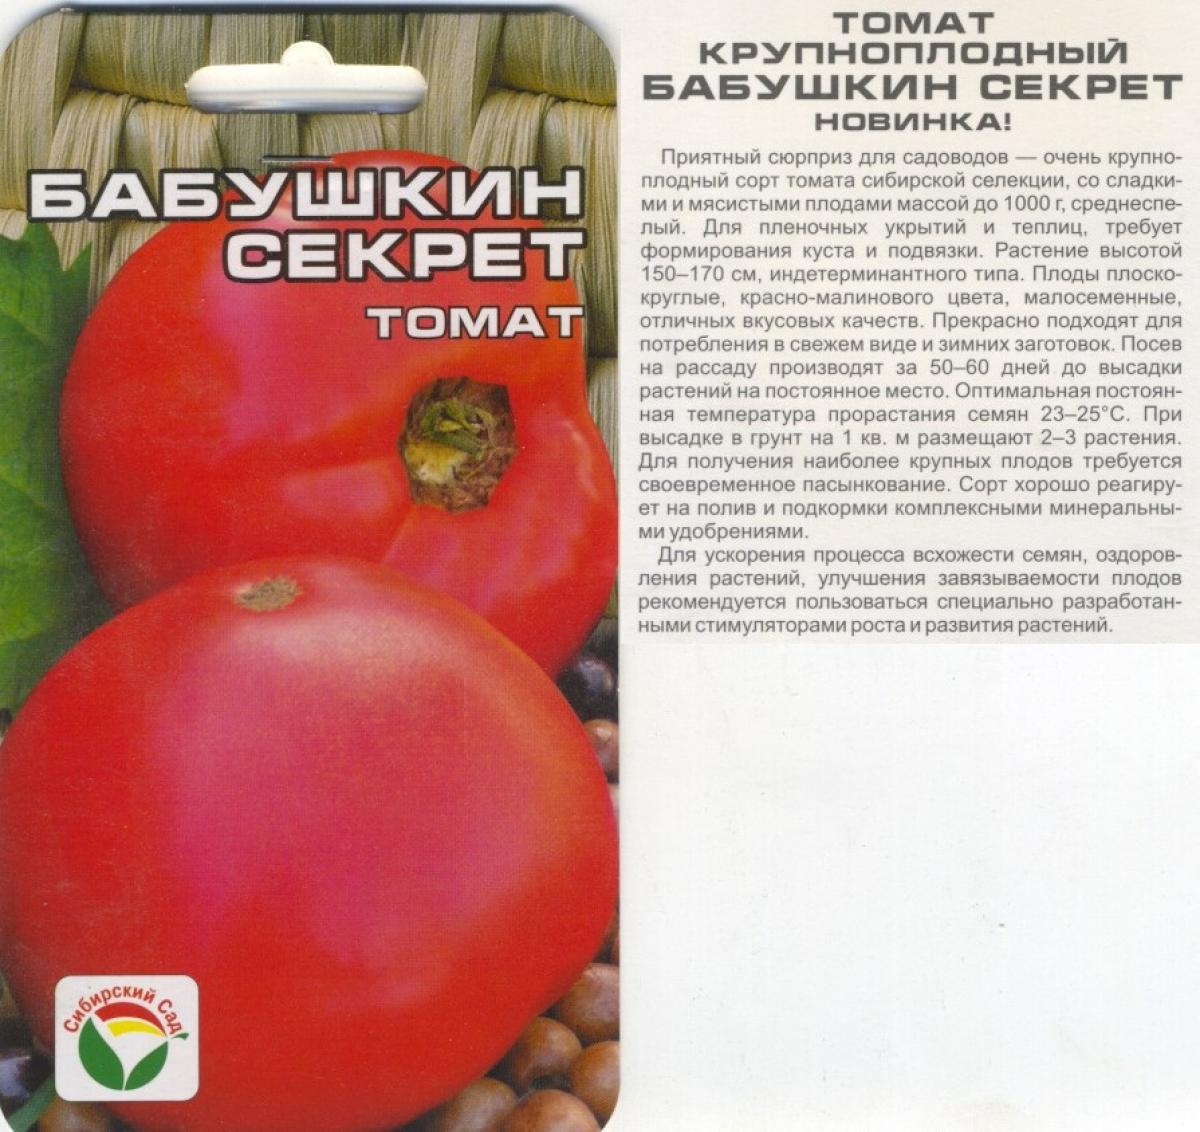 Описание сорта томата Ямал, его характеристика и выращивание